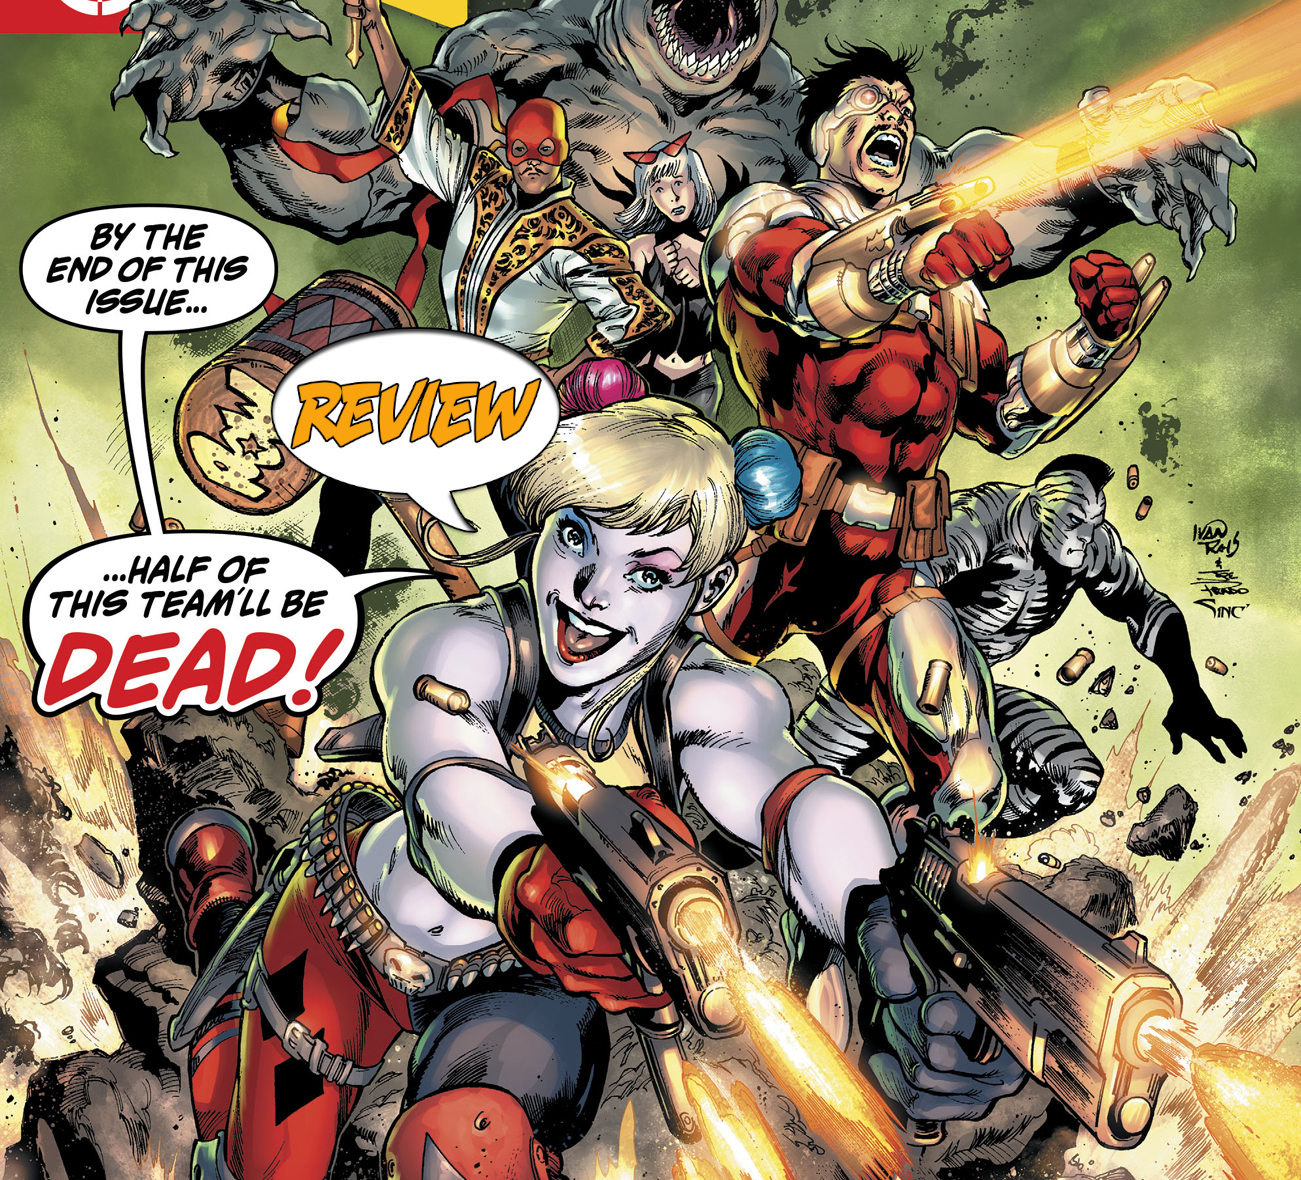 DC Comics: Suicide Squad #1 preview